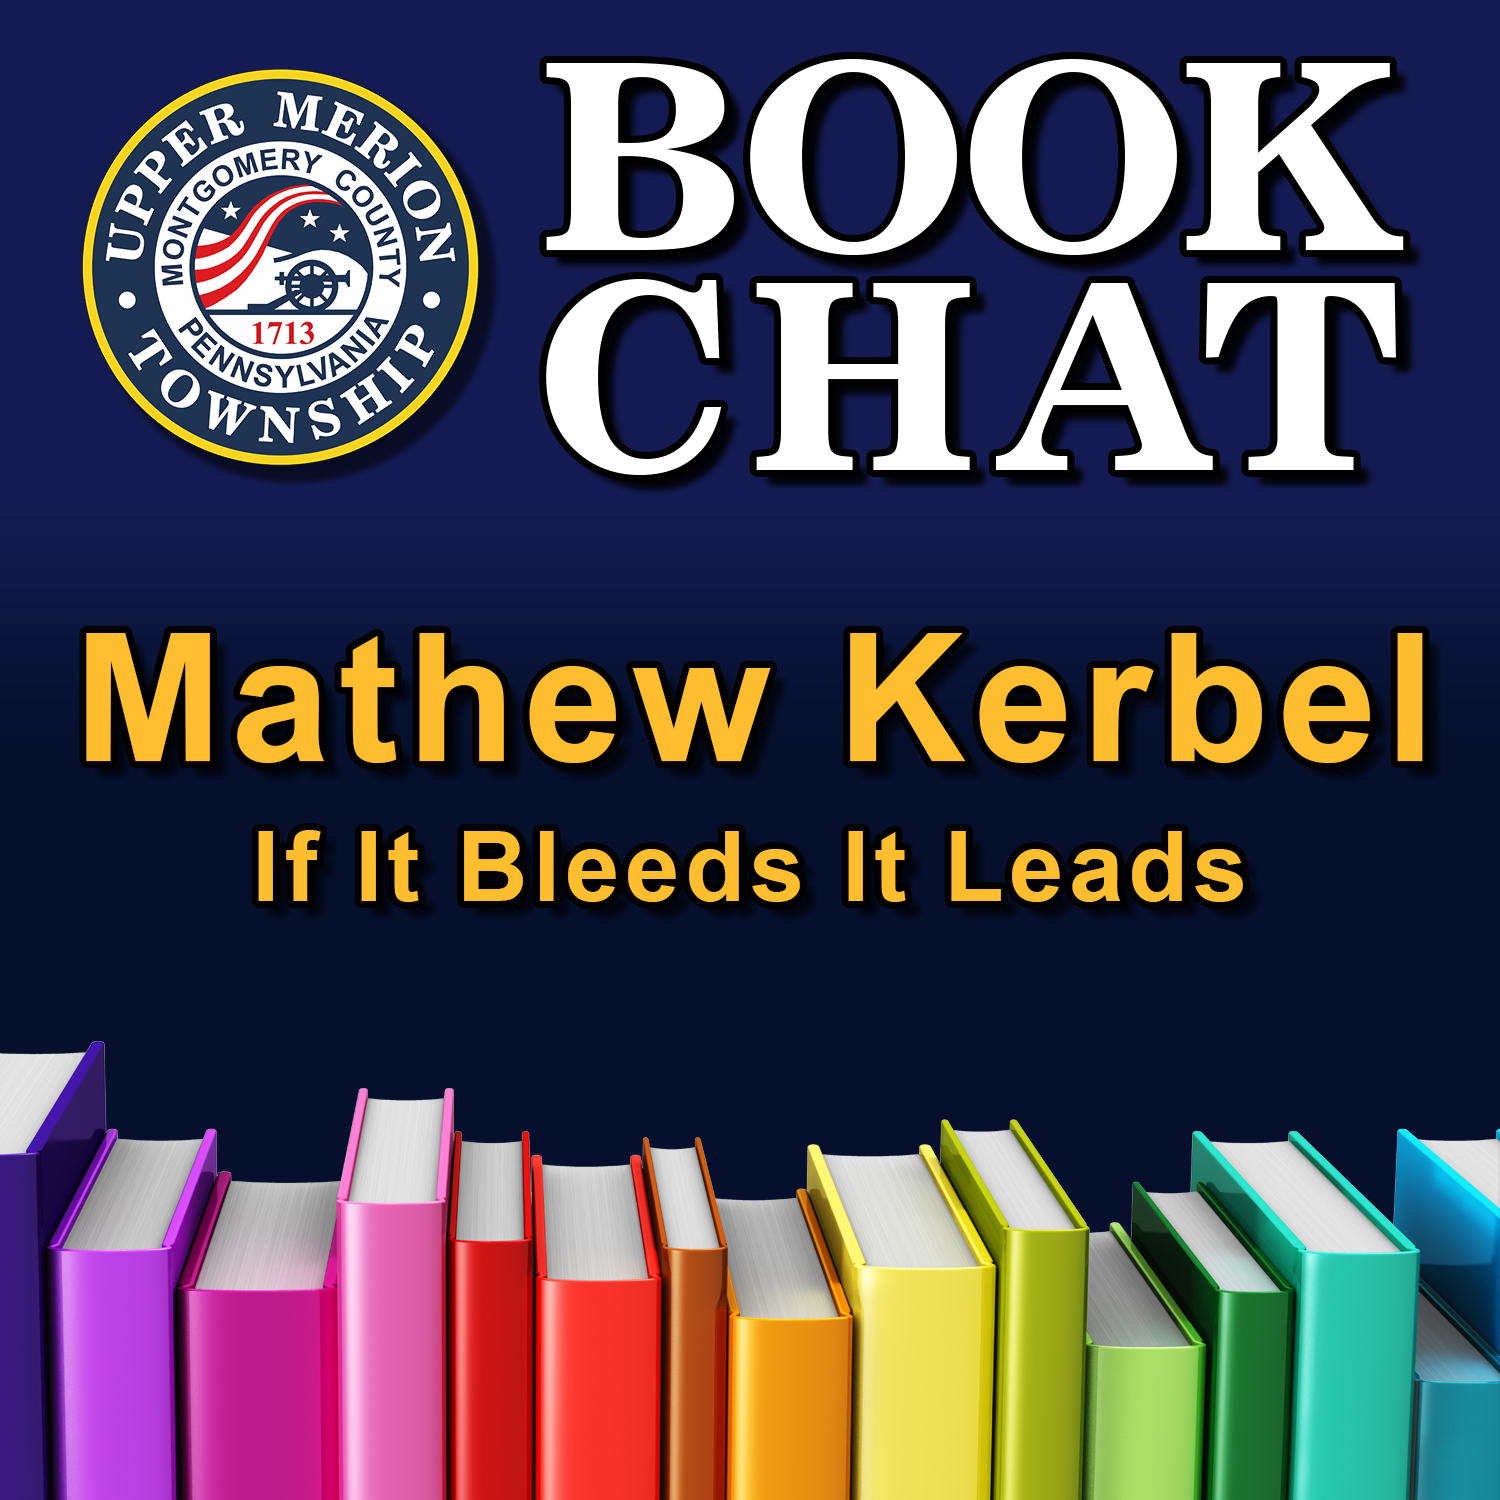 Mathew Kerbel - If it Bleeds it Leads